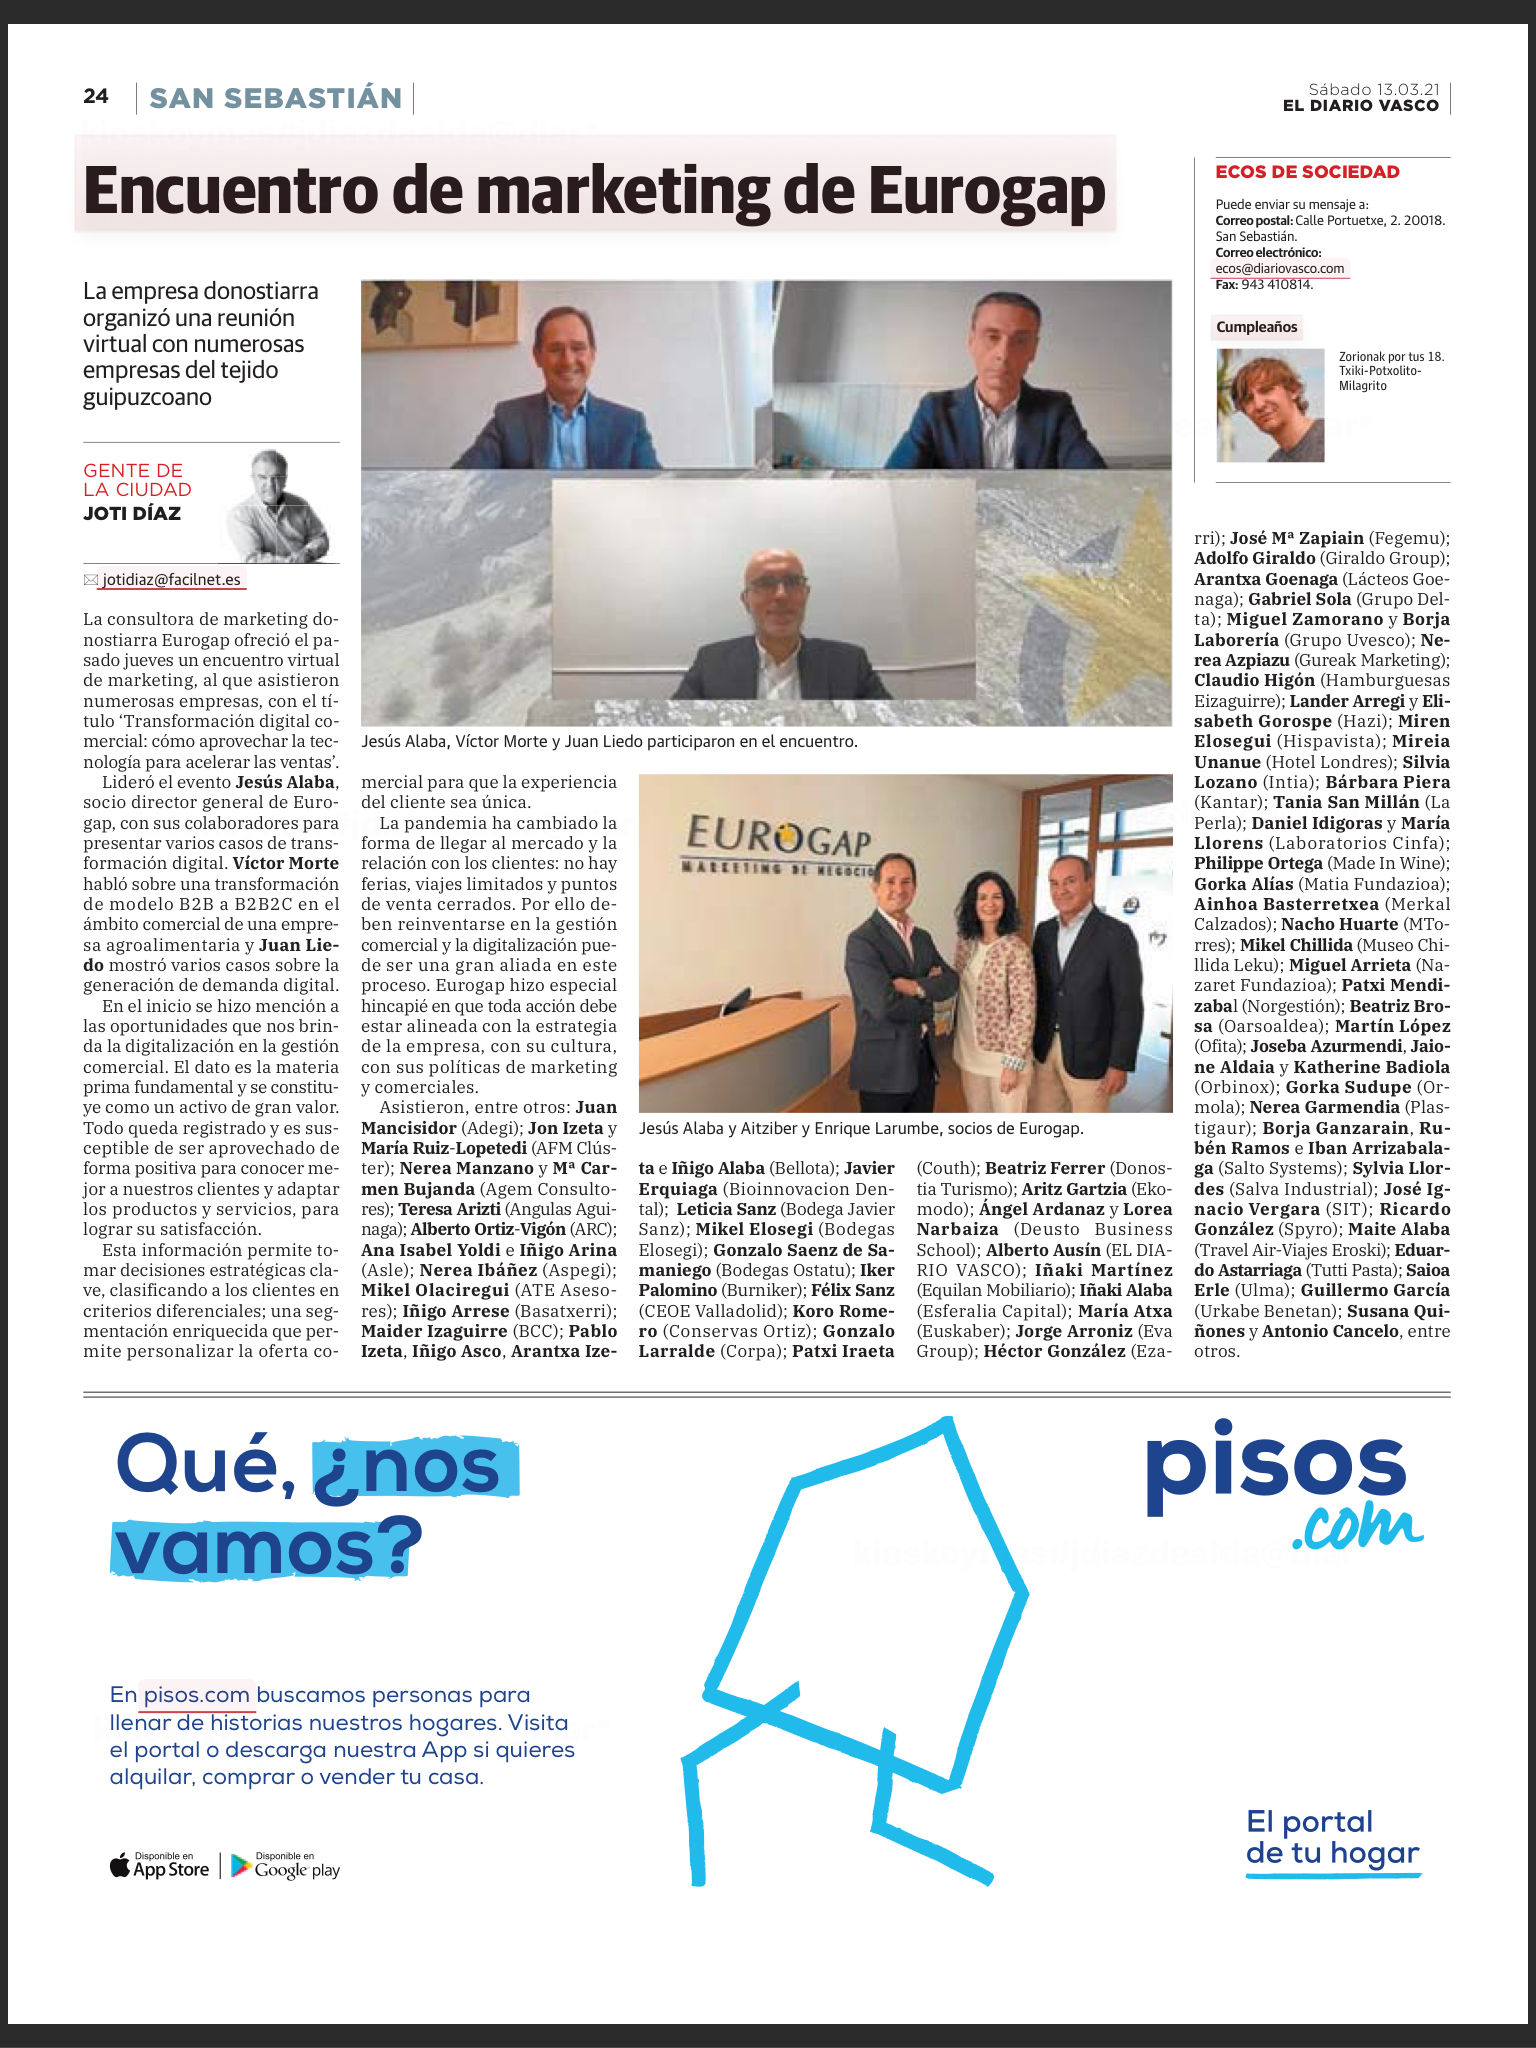 Encuentro de Marketing Eurogap El Diario Vasco marzo 2021